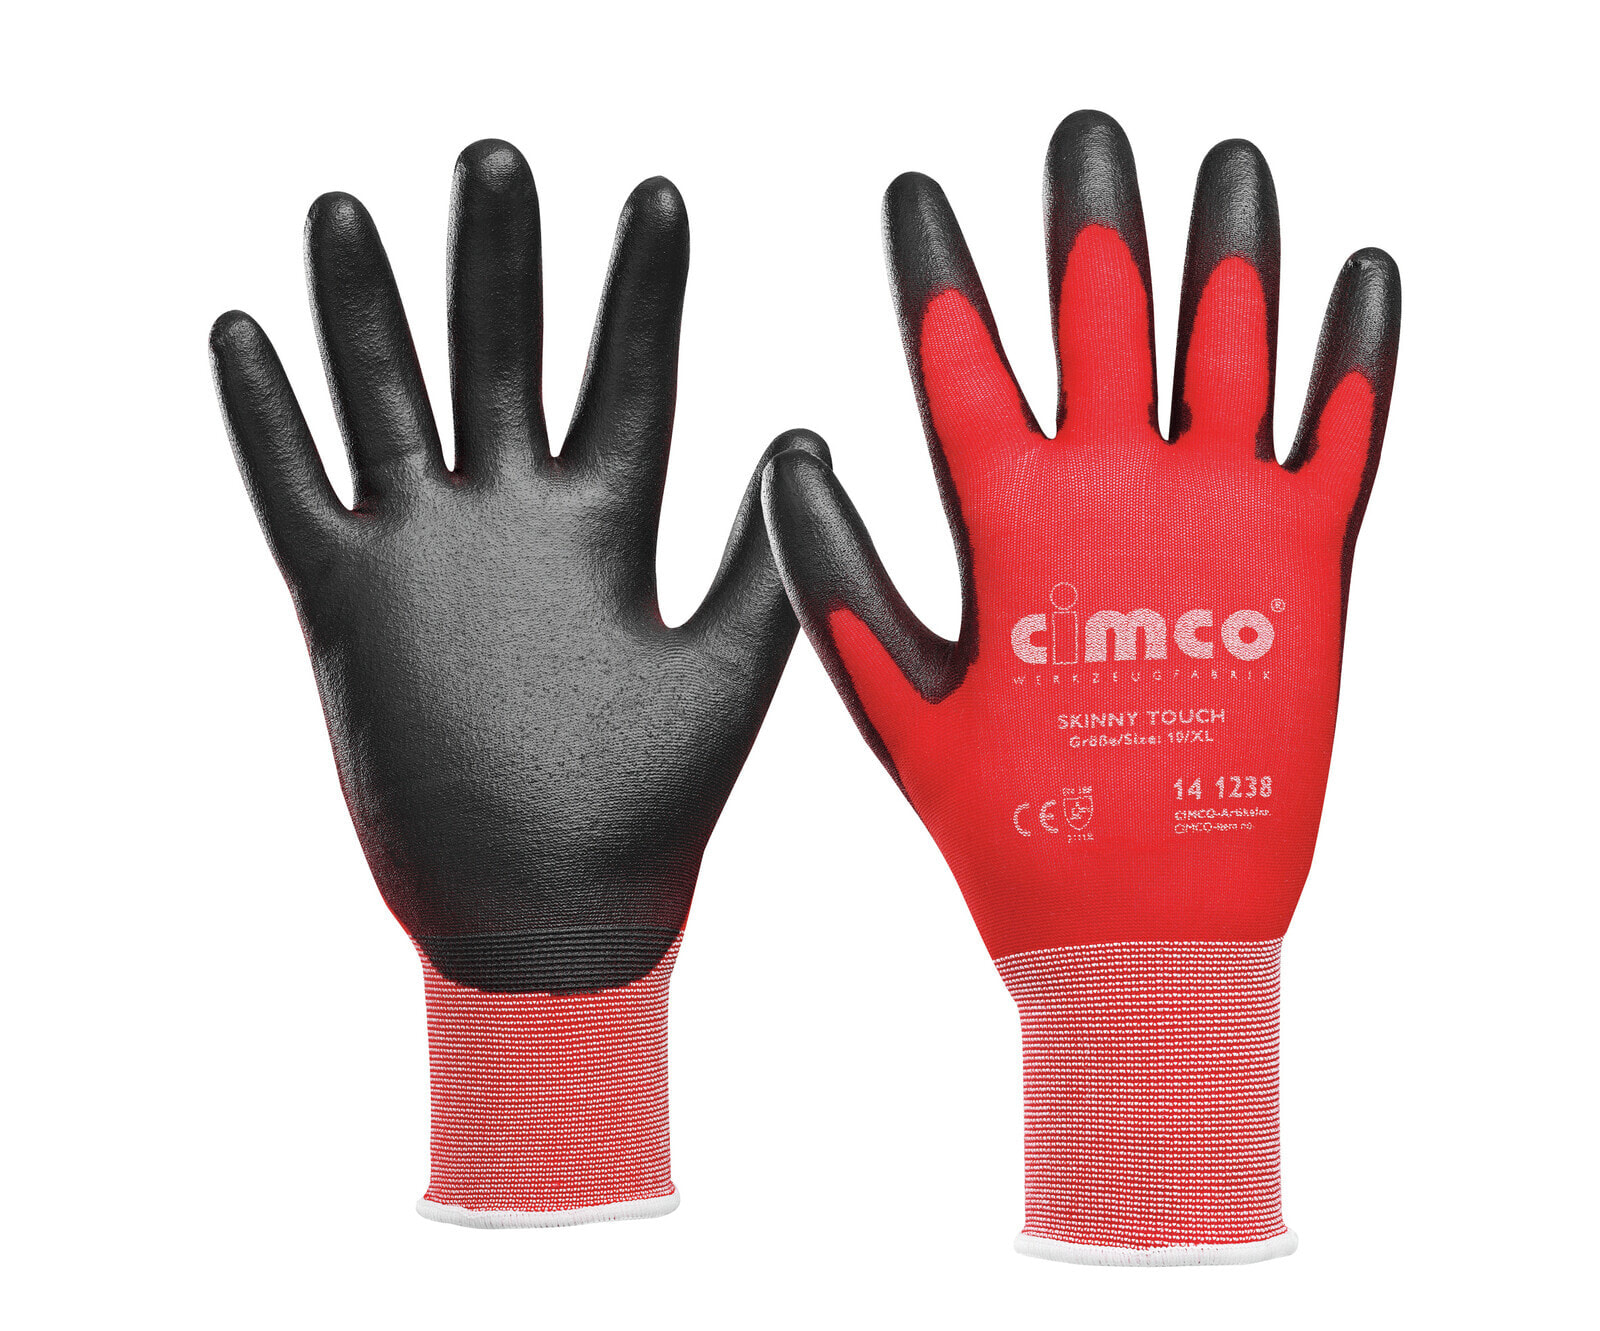 141237 - Workshop gloves - Black - Red - L - EUE - Adult - Unisex